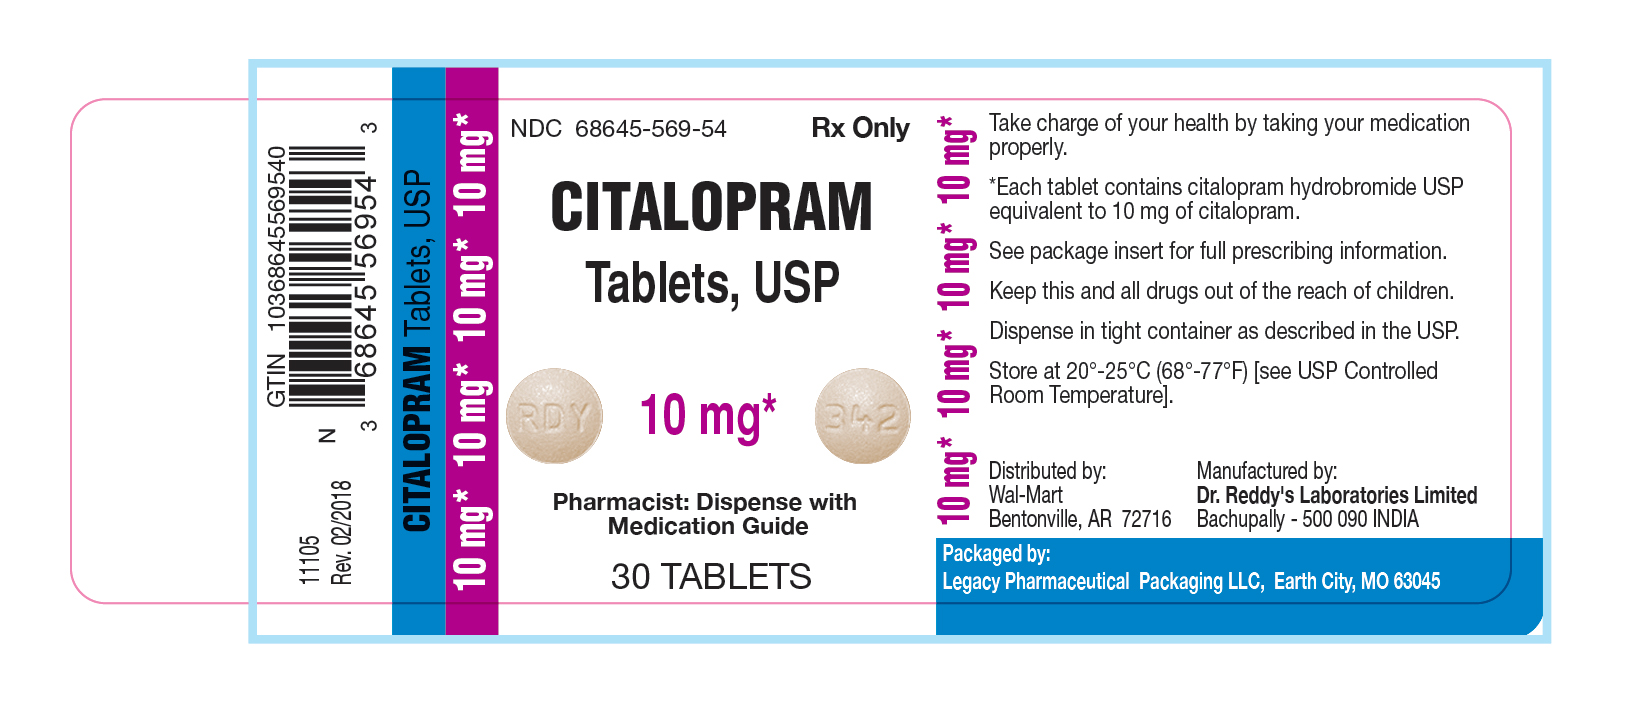 Citalopram Tablets, USP 10 mg